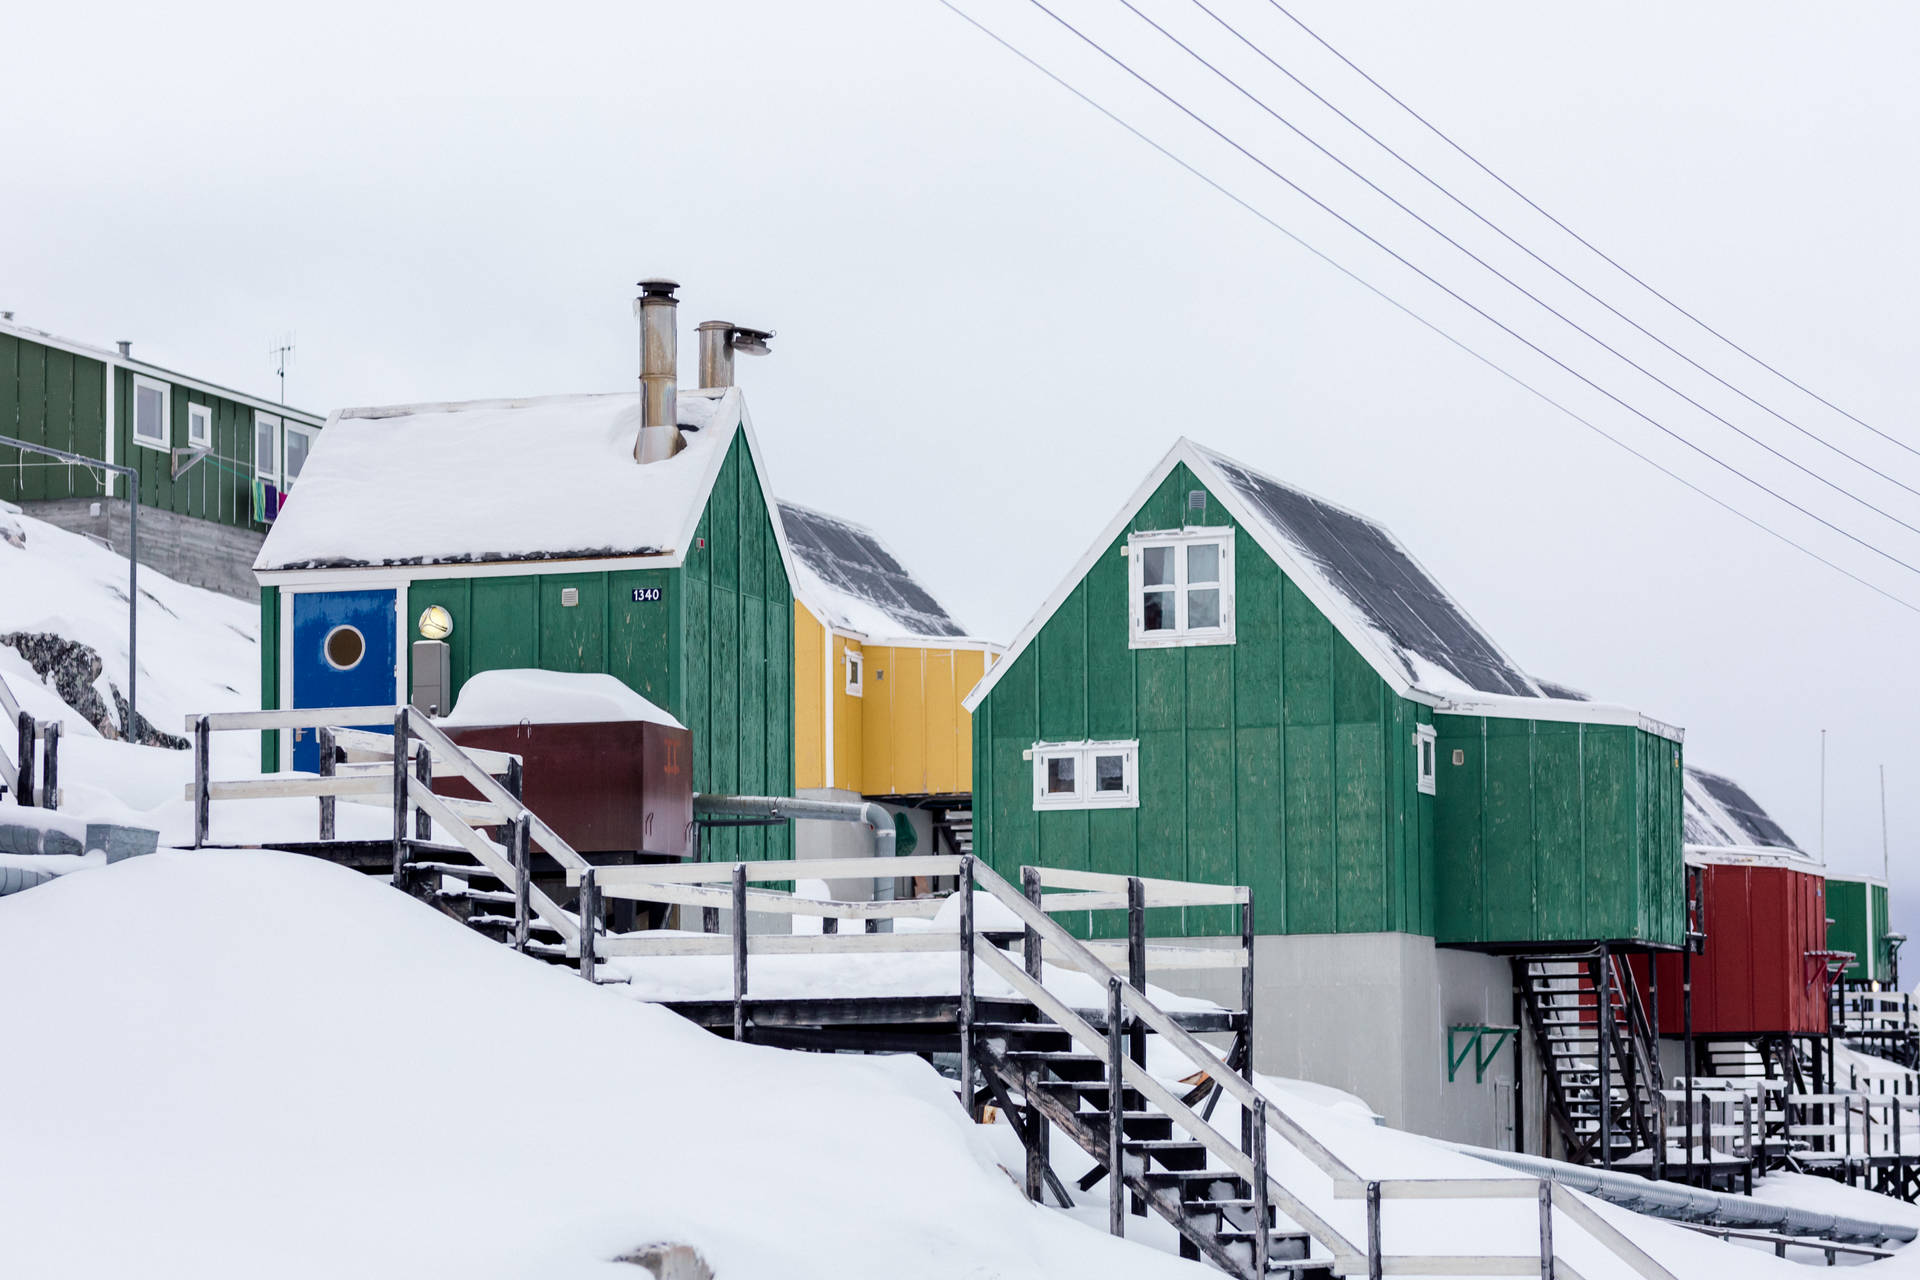 Aasiaat Greenland Houses